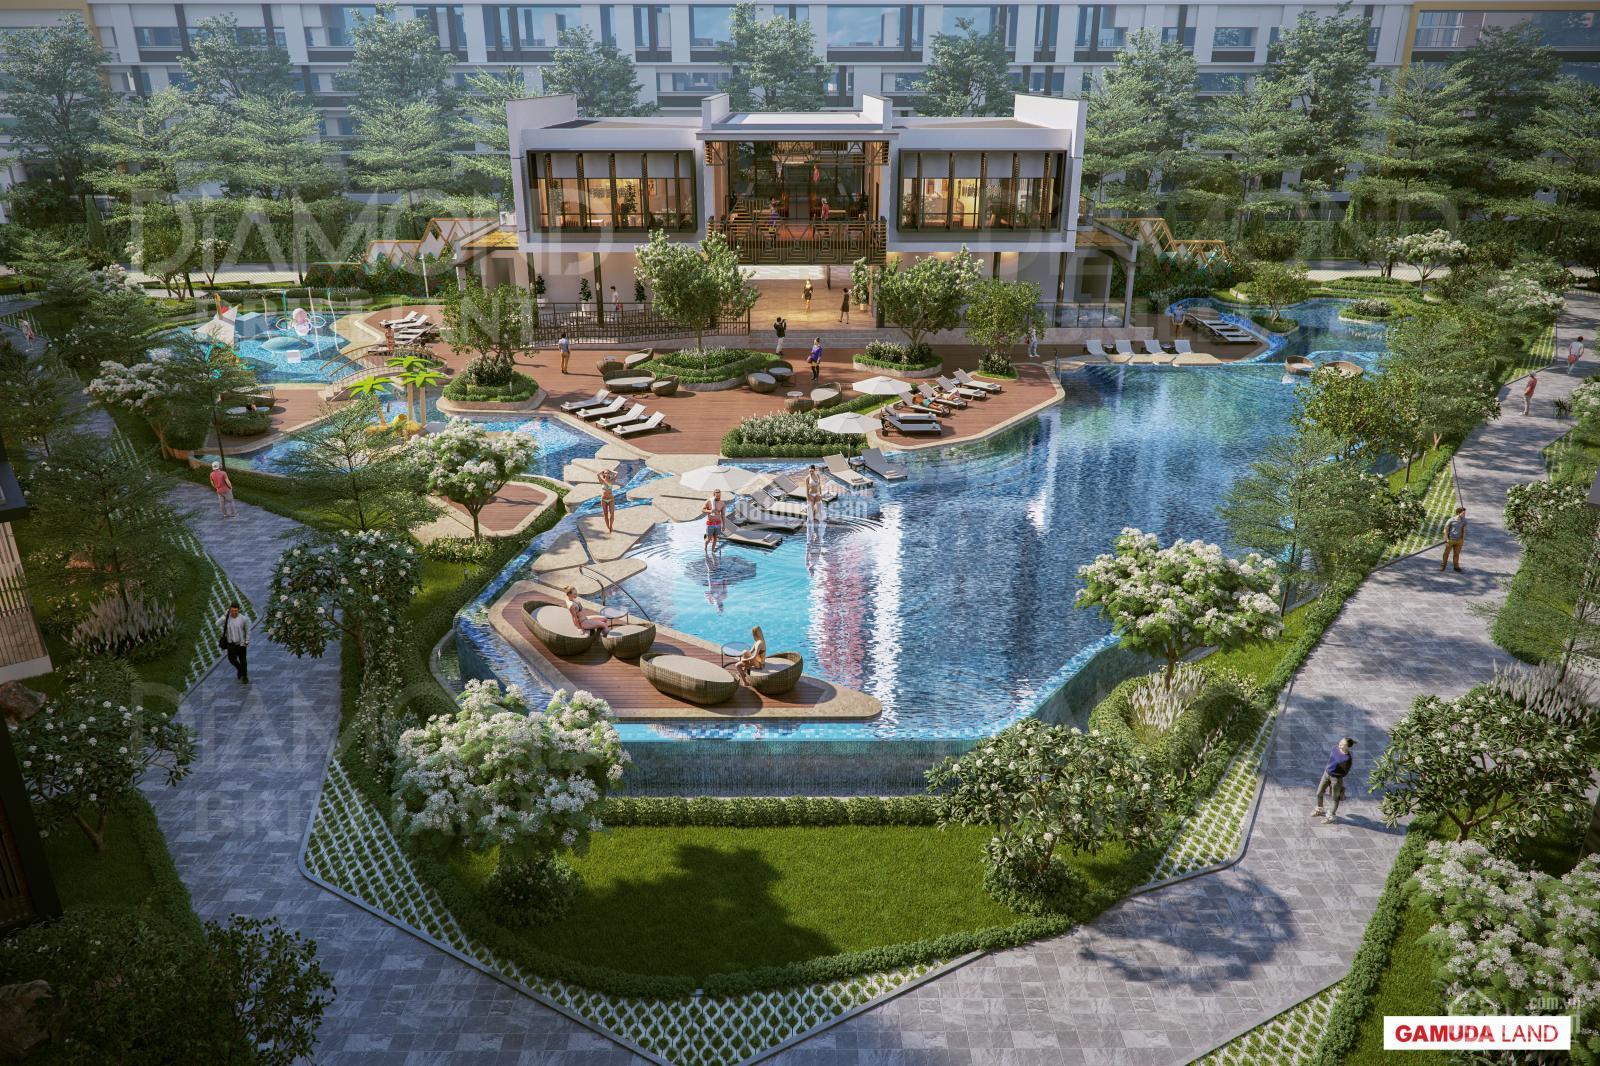 Condo Villa - chuẩn mực sống mới tại Sài Gòn, kênh đầu tư sinh lời bền vững vì số lượng giới hạn